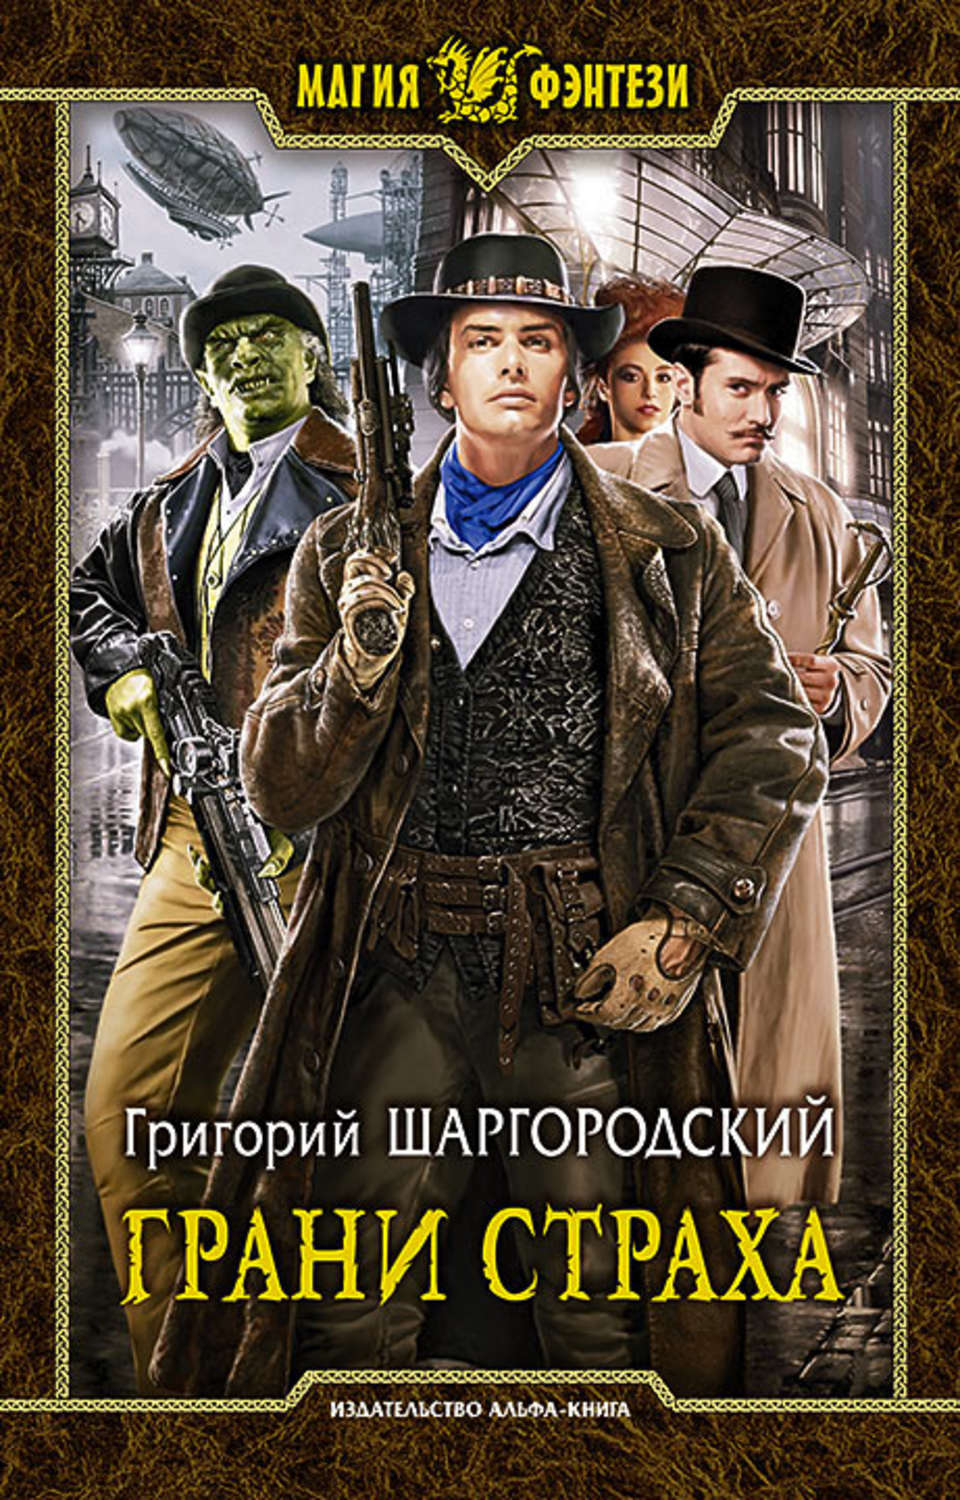 Шаргородский книги скачать бесплатно fb2